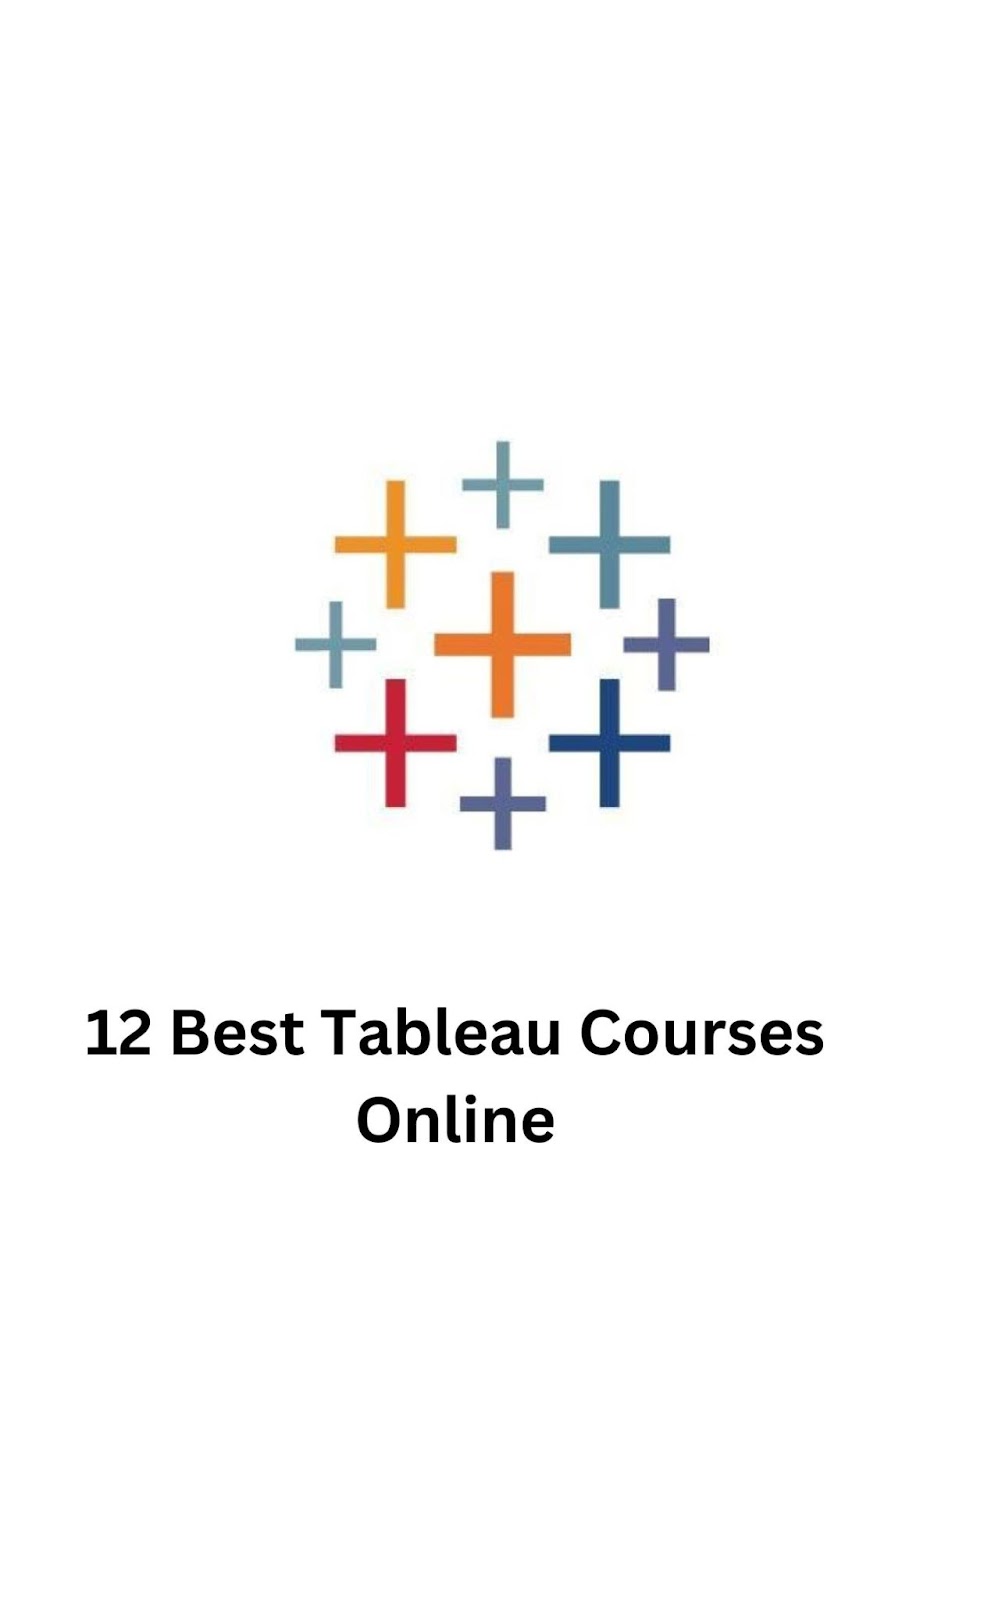 Tableau courses online